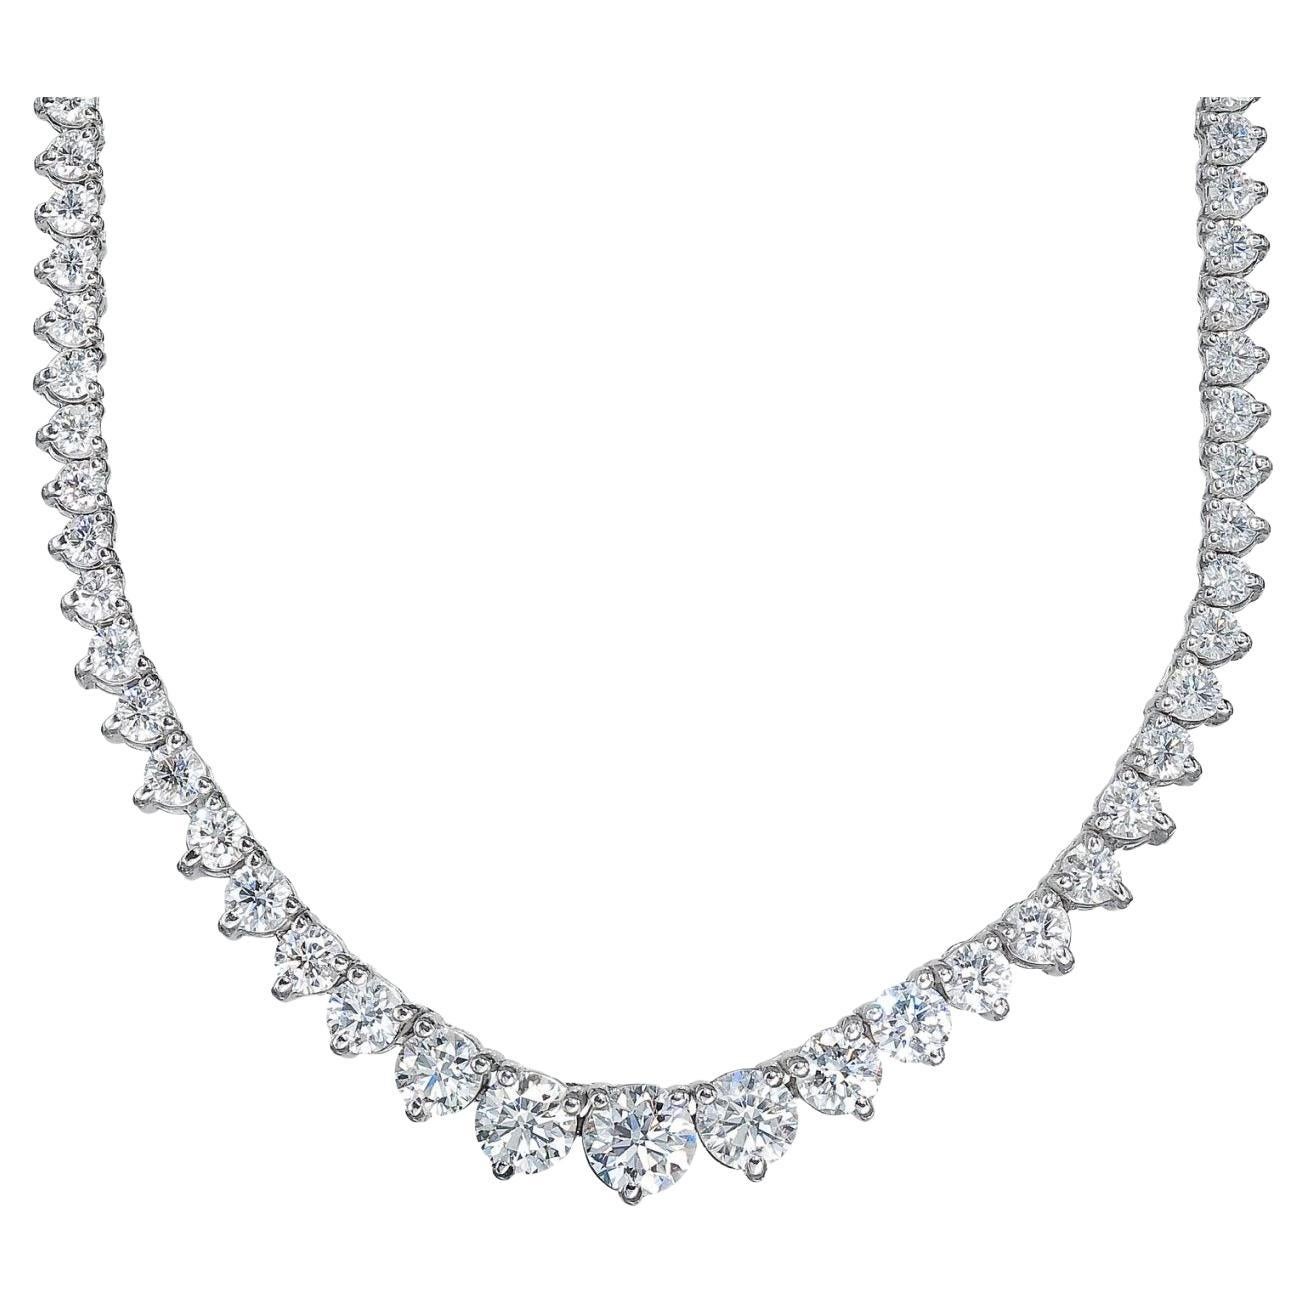 Abgestufte Tennis-Halskette mit 3 runden Diamanten in Zackenform.  D5.07ct.t.w.